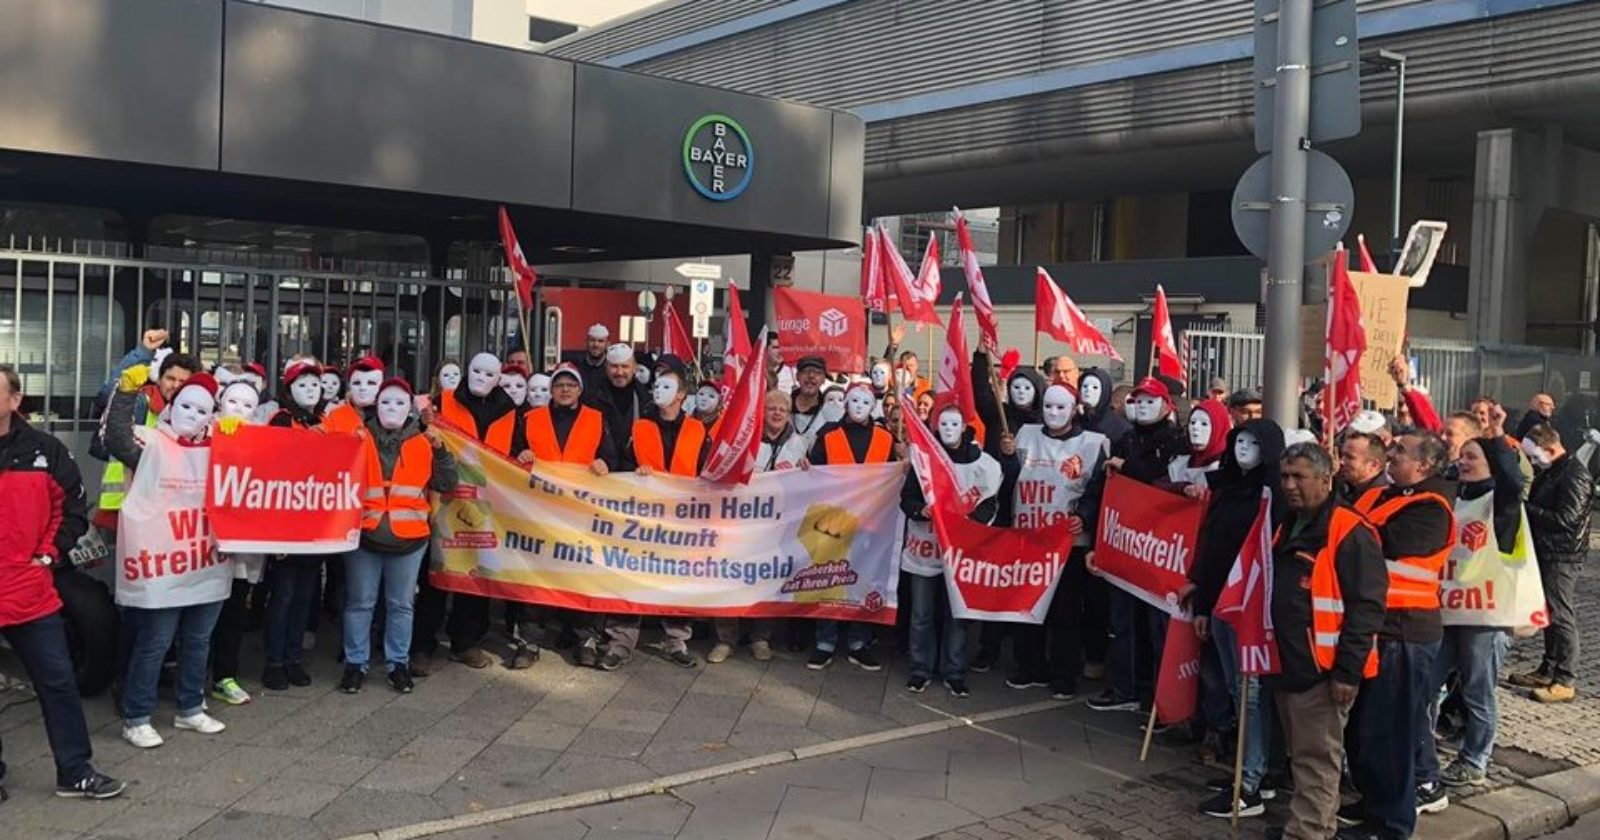 Streikbruch statt Ausbildung: Gegenbauer Services setzt neue Negativmaßstäbe - Streikende sorgen dennoch für Störung im Produktionsablauf bei Bayer